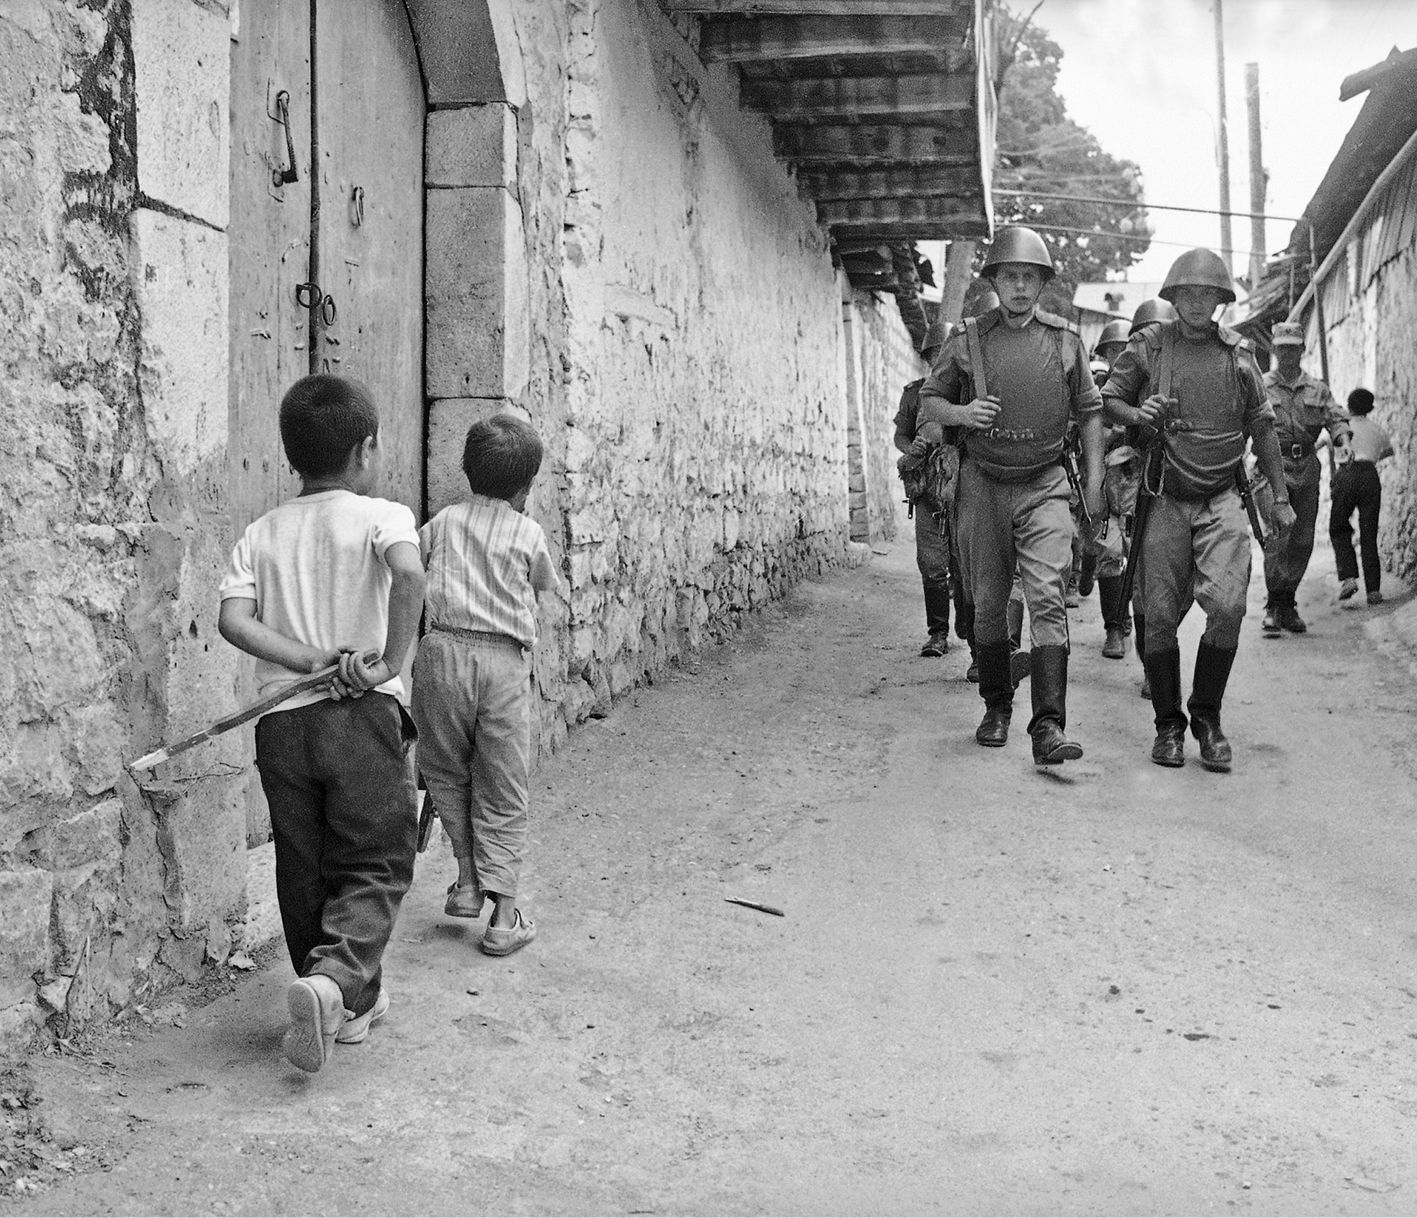 Fotografia em preto e branco. Militares passando por crianças na rua de um vilarejo.